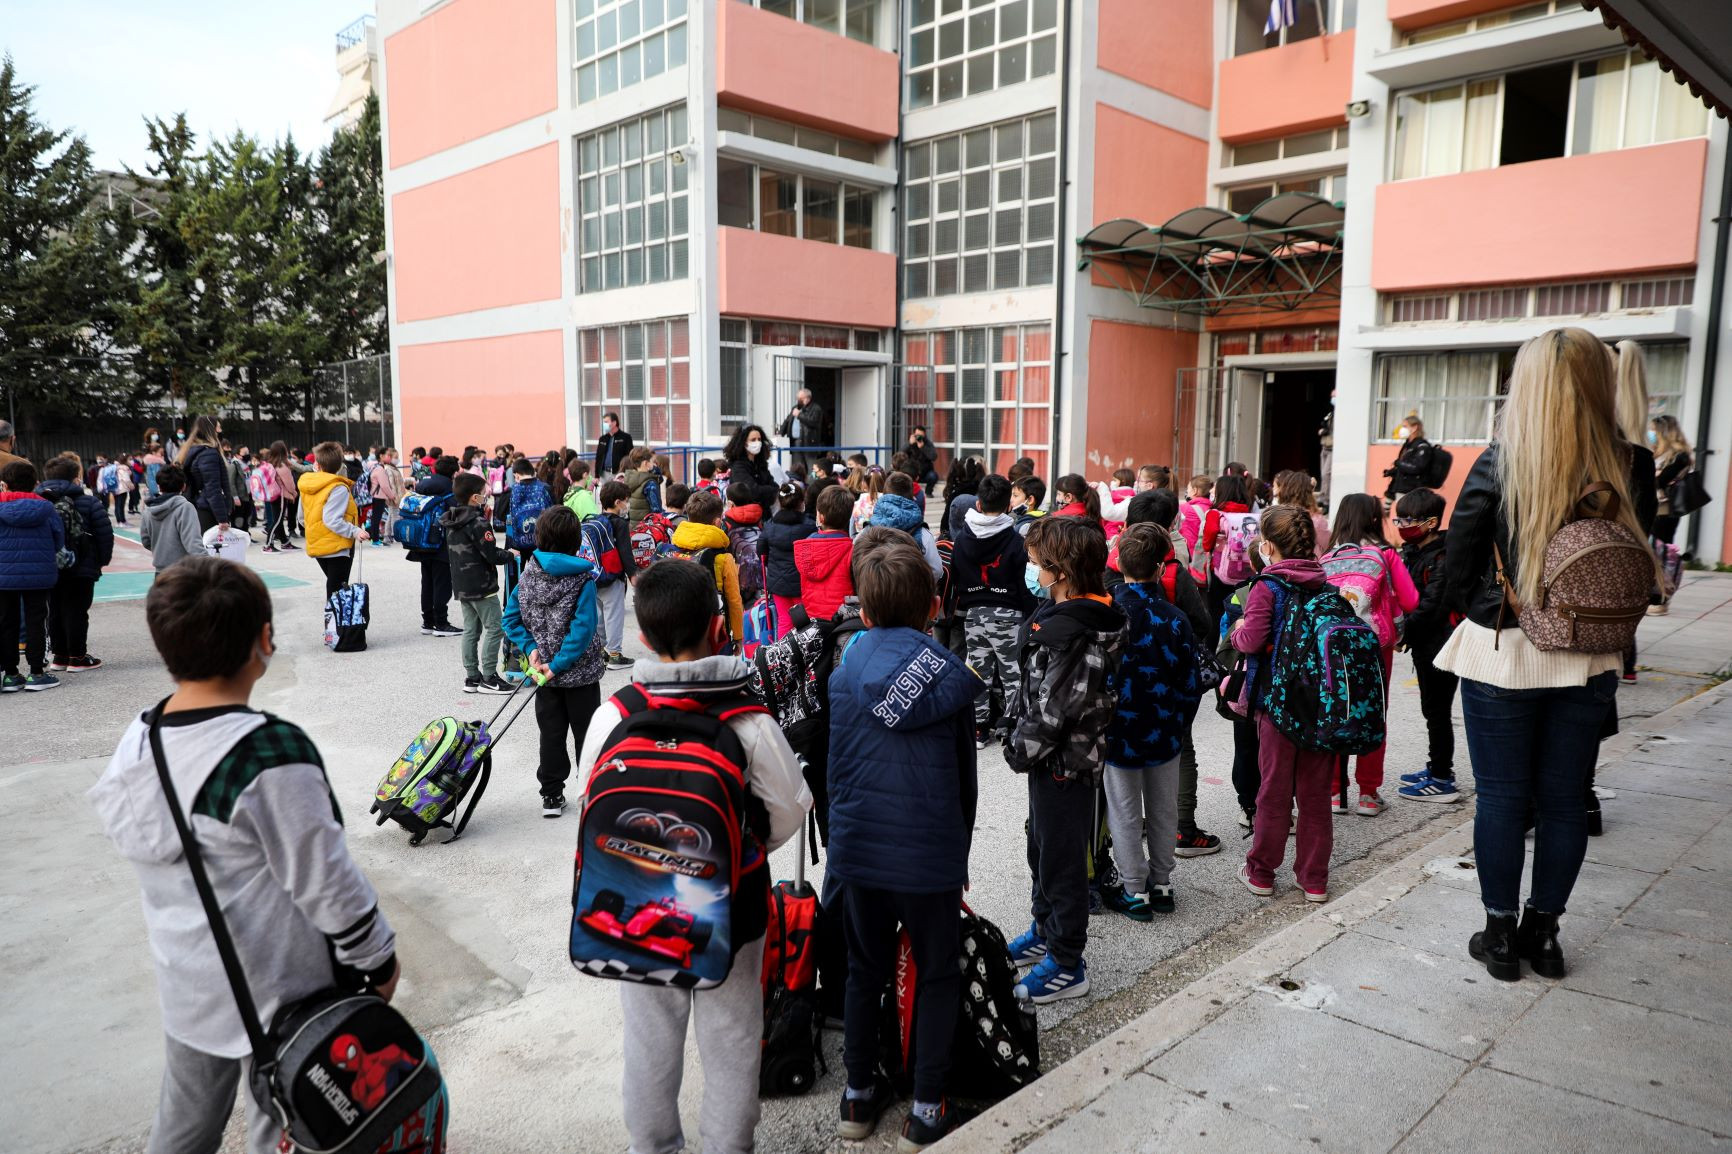 Απ. Βανταράκης (καθηγητής Υγιεινής): Τα σχολεία άνοιξαν χωρίς επιπλέον μέτρα, χωρίς λογική